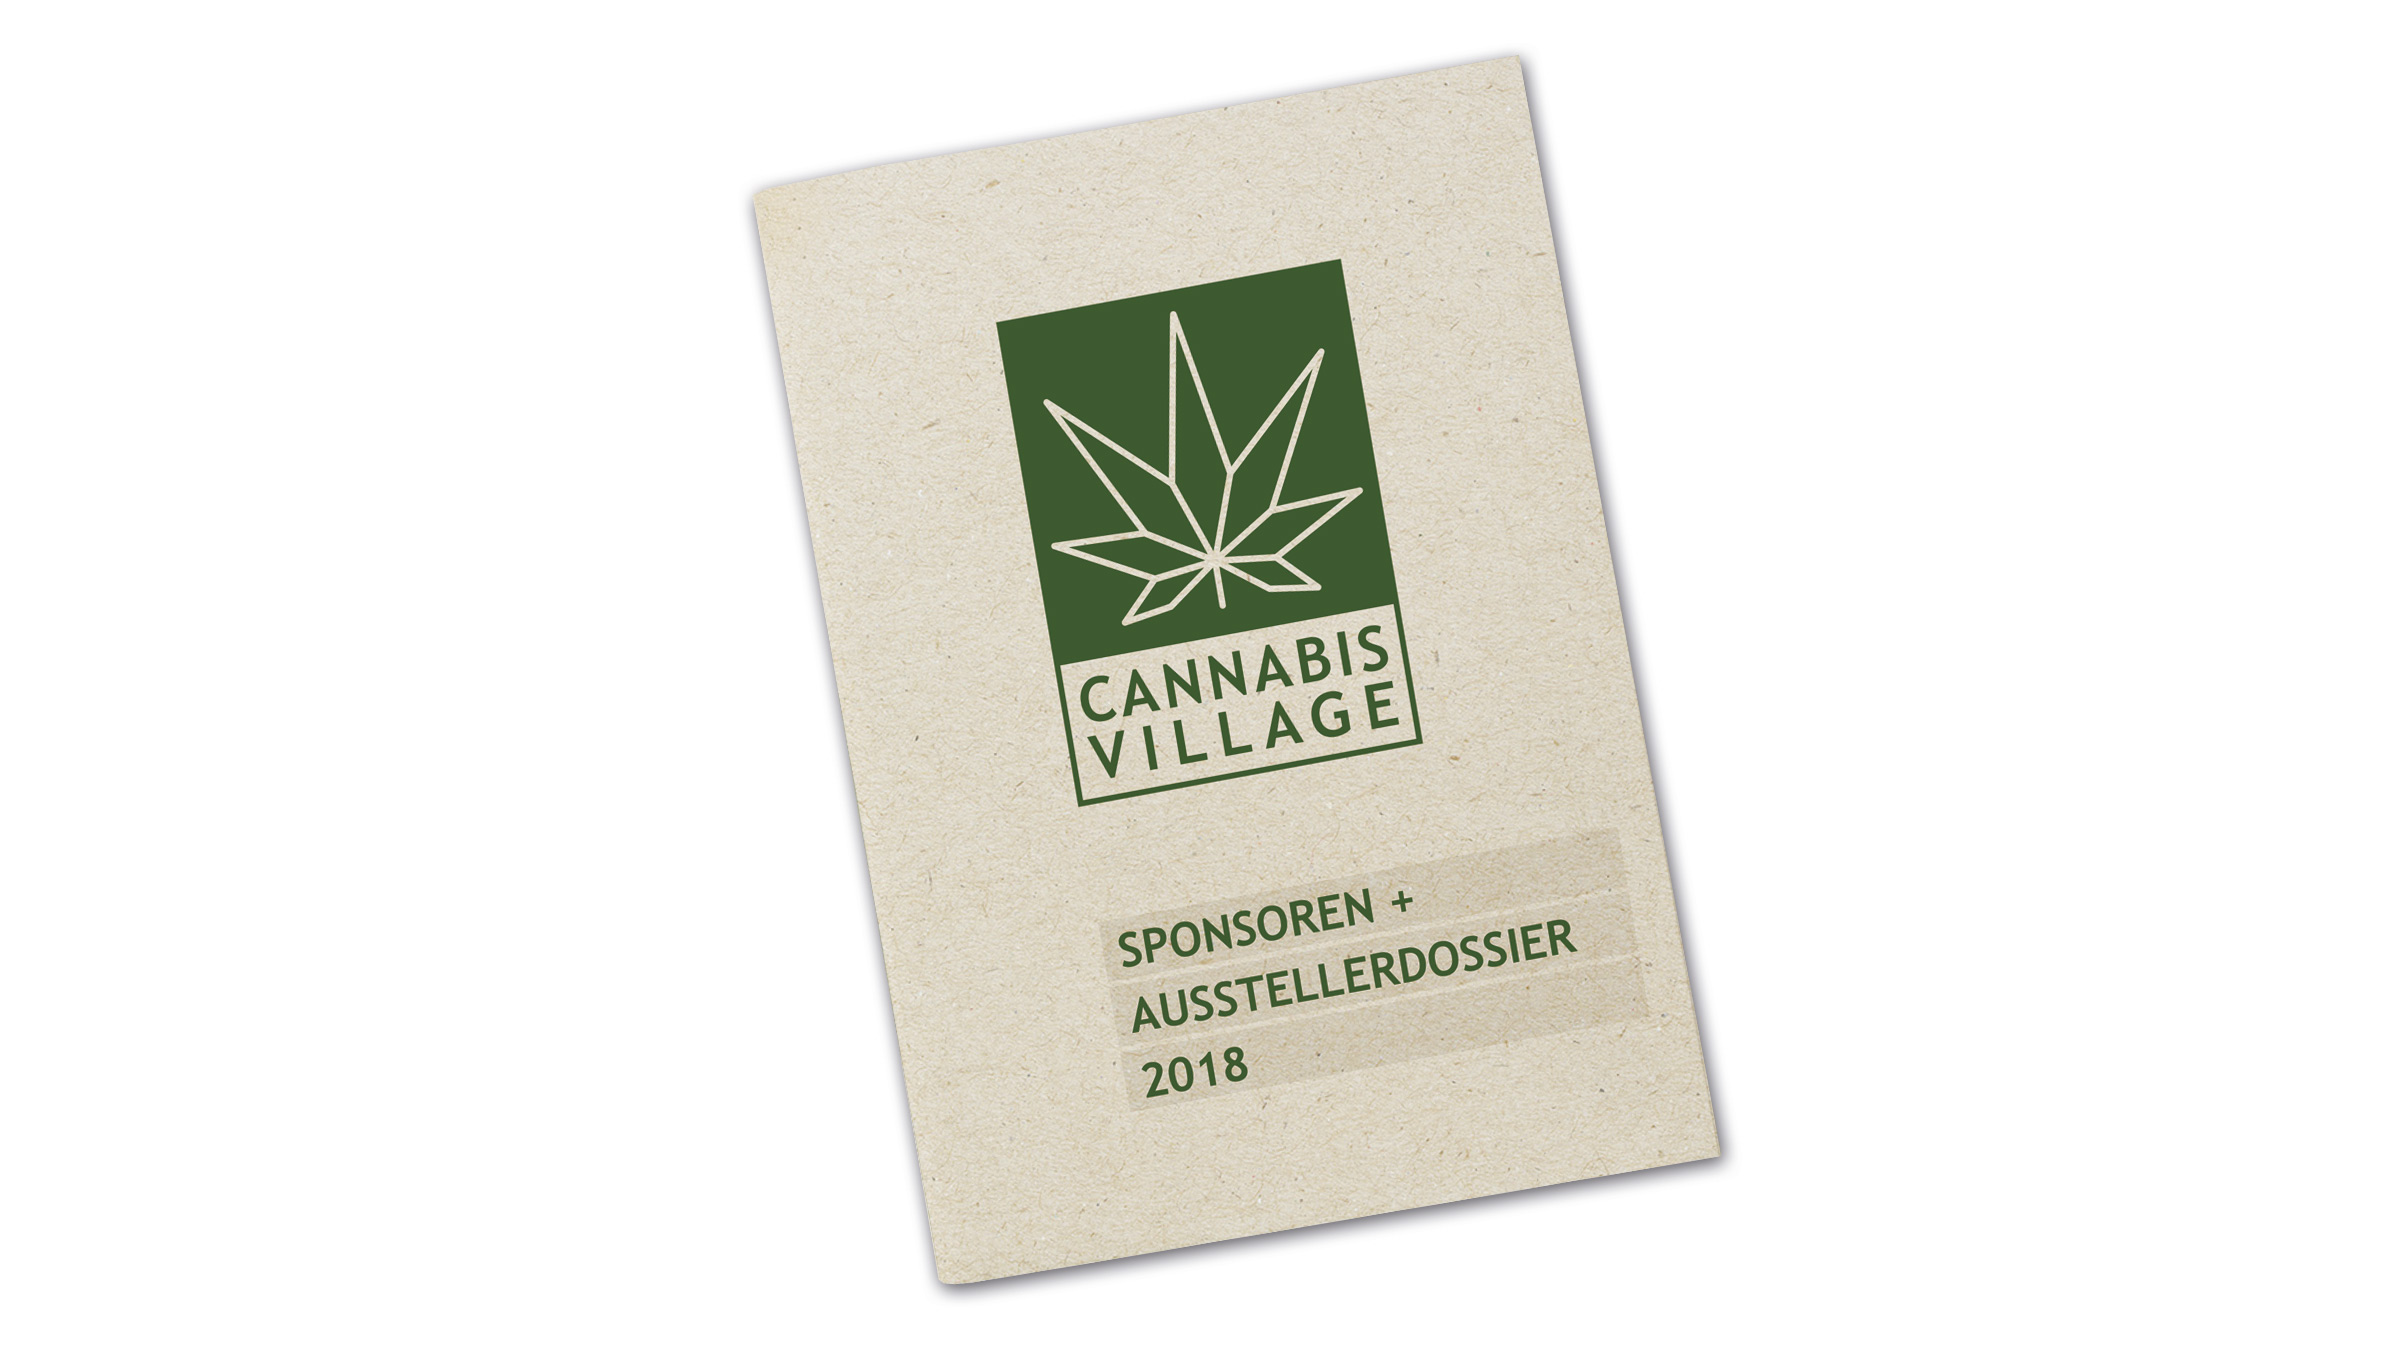 Cannabis Village Sponsorendossier